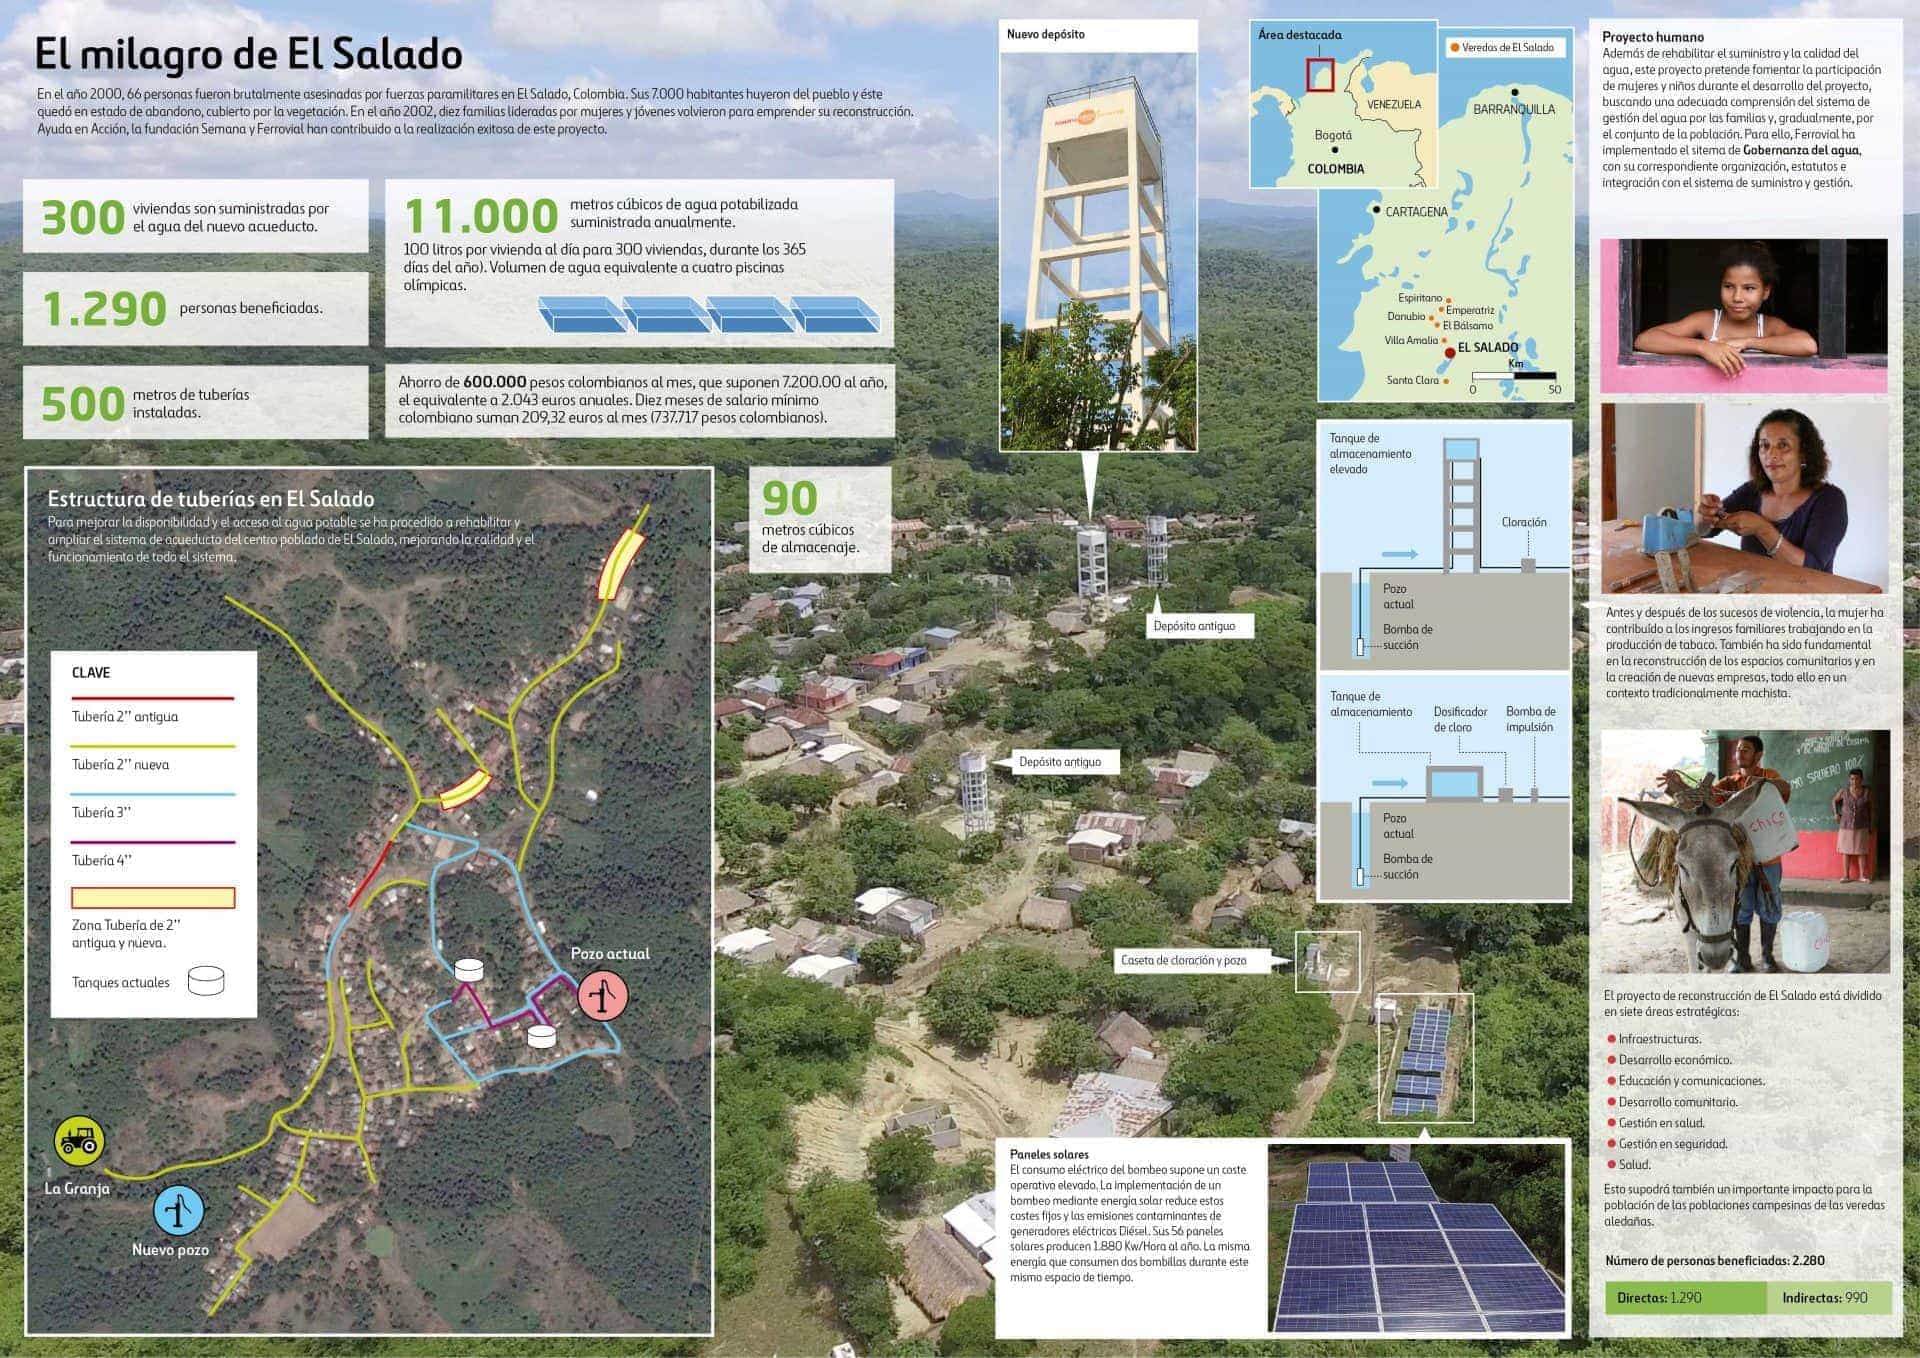 Infografía del proyecto realizado por Ayuda en Acción, Fundación Semana y Ferrovial en El Salado, Colombia.